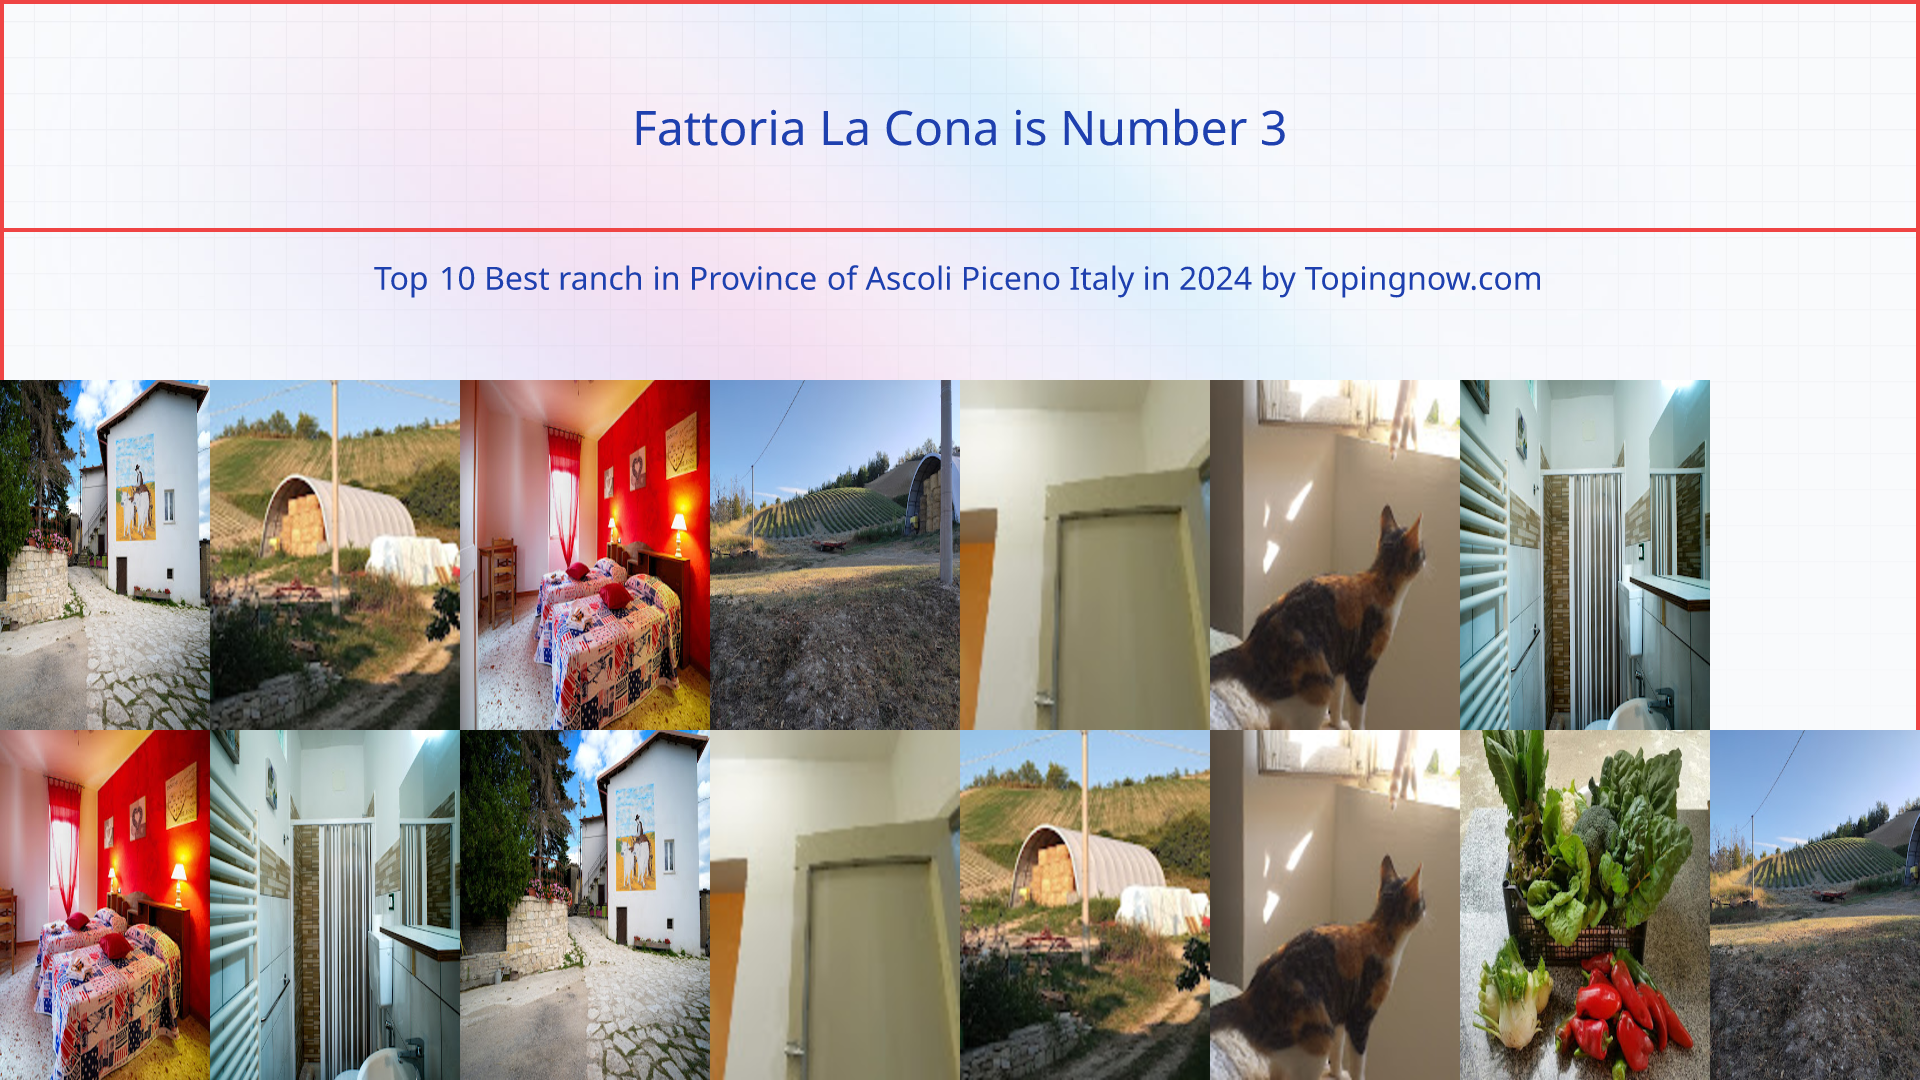 Fattoria La Cona: Top 10 Best ranch in Province of Ascoli Piceno Italy in 2024